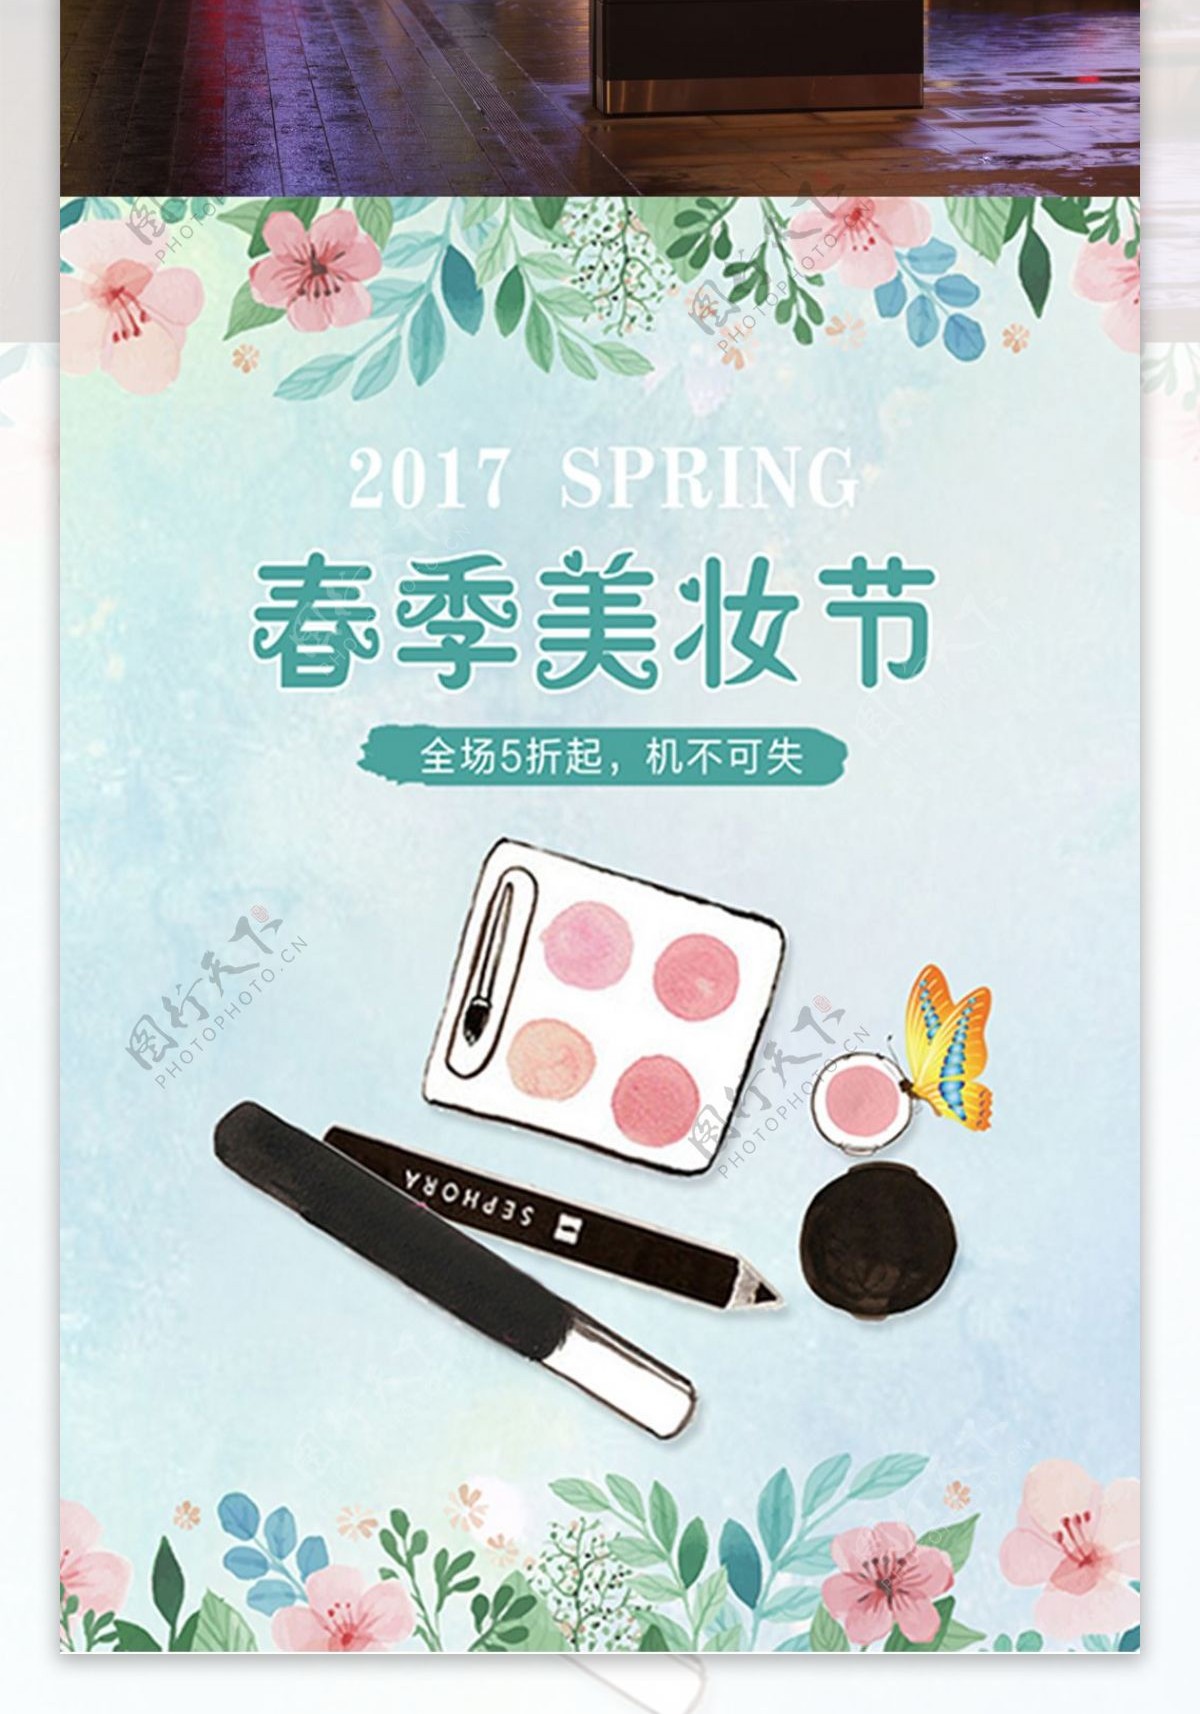 水粉春季美妆节女士用品优惠打折海报